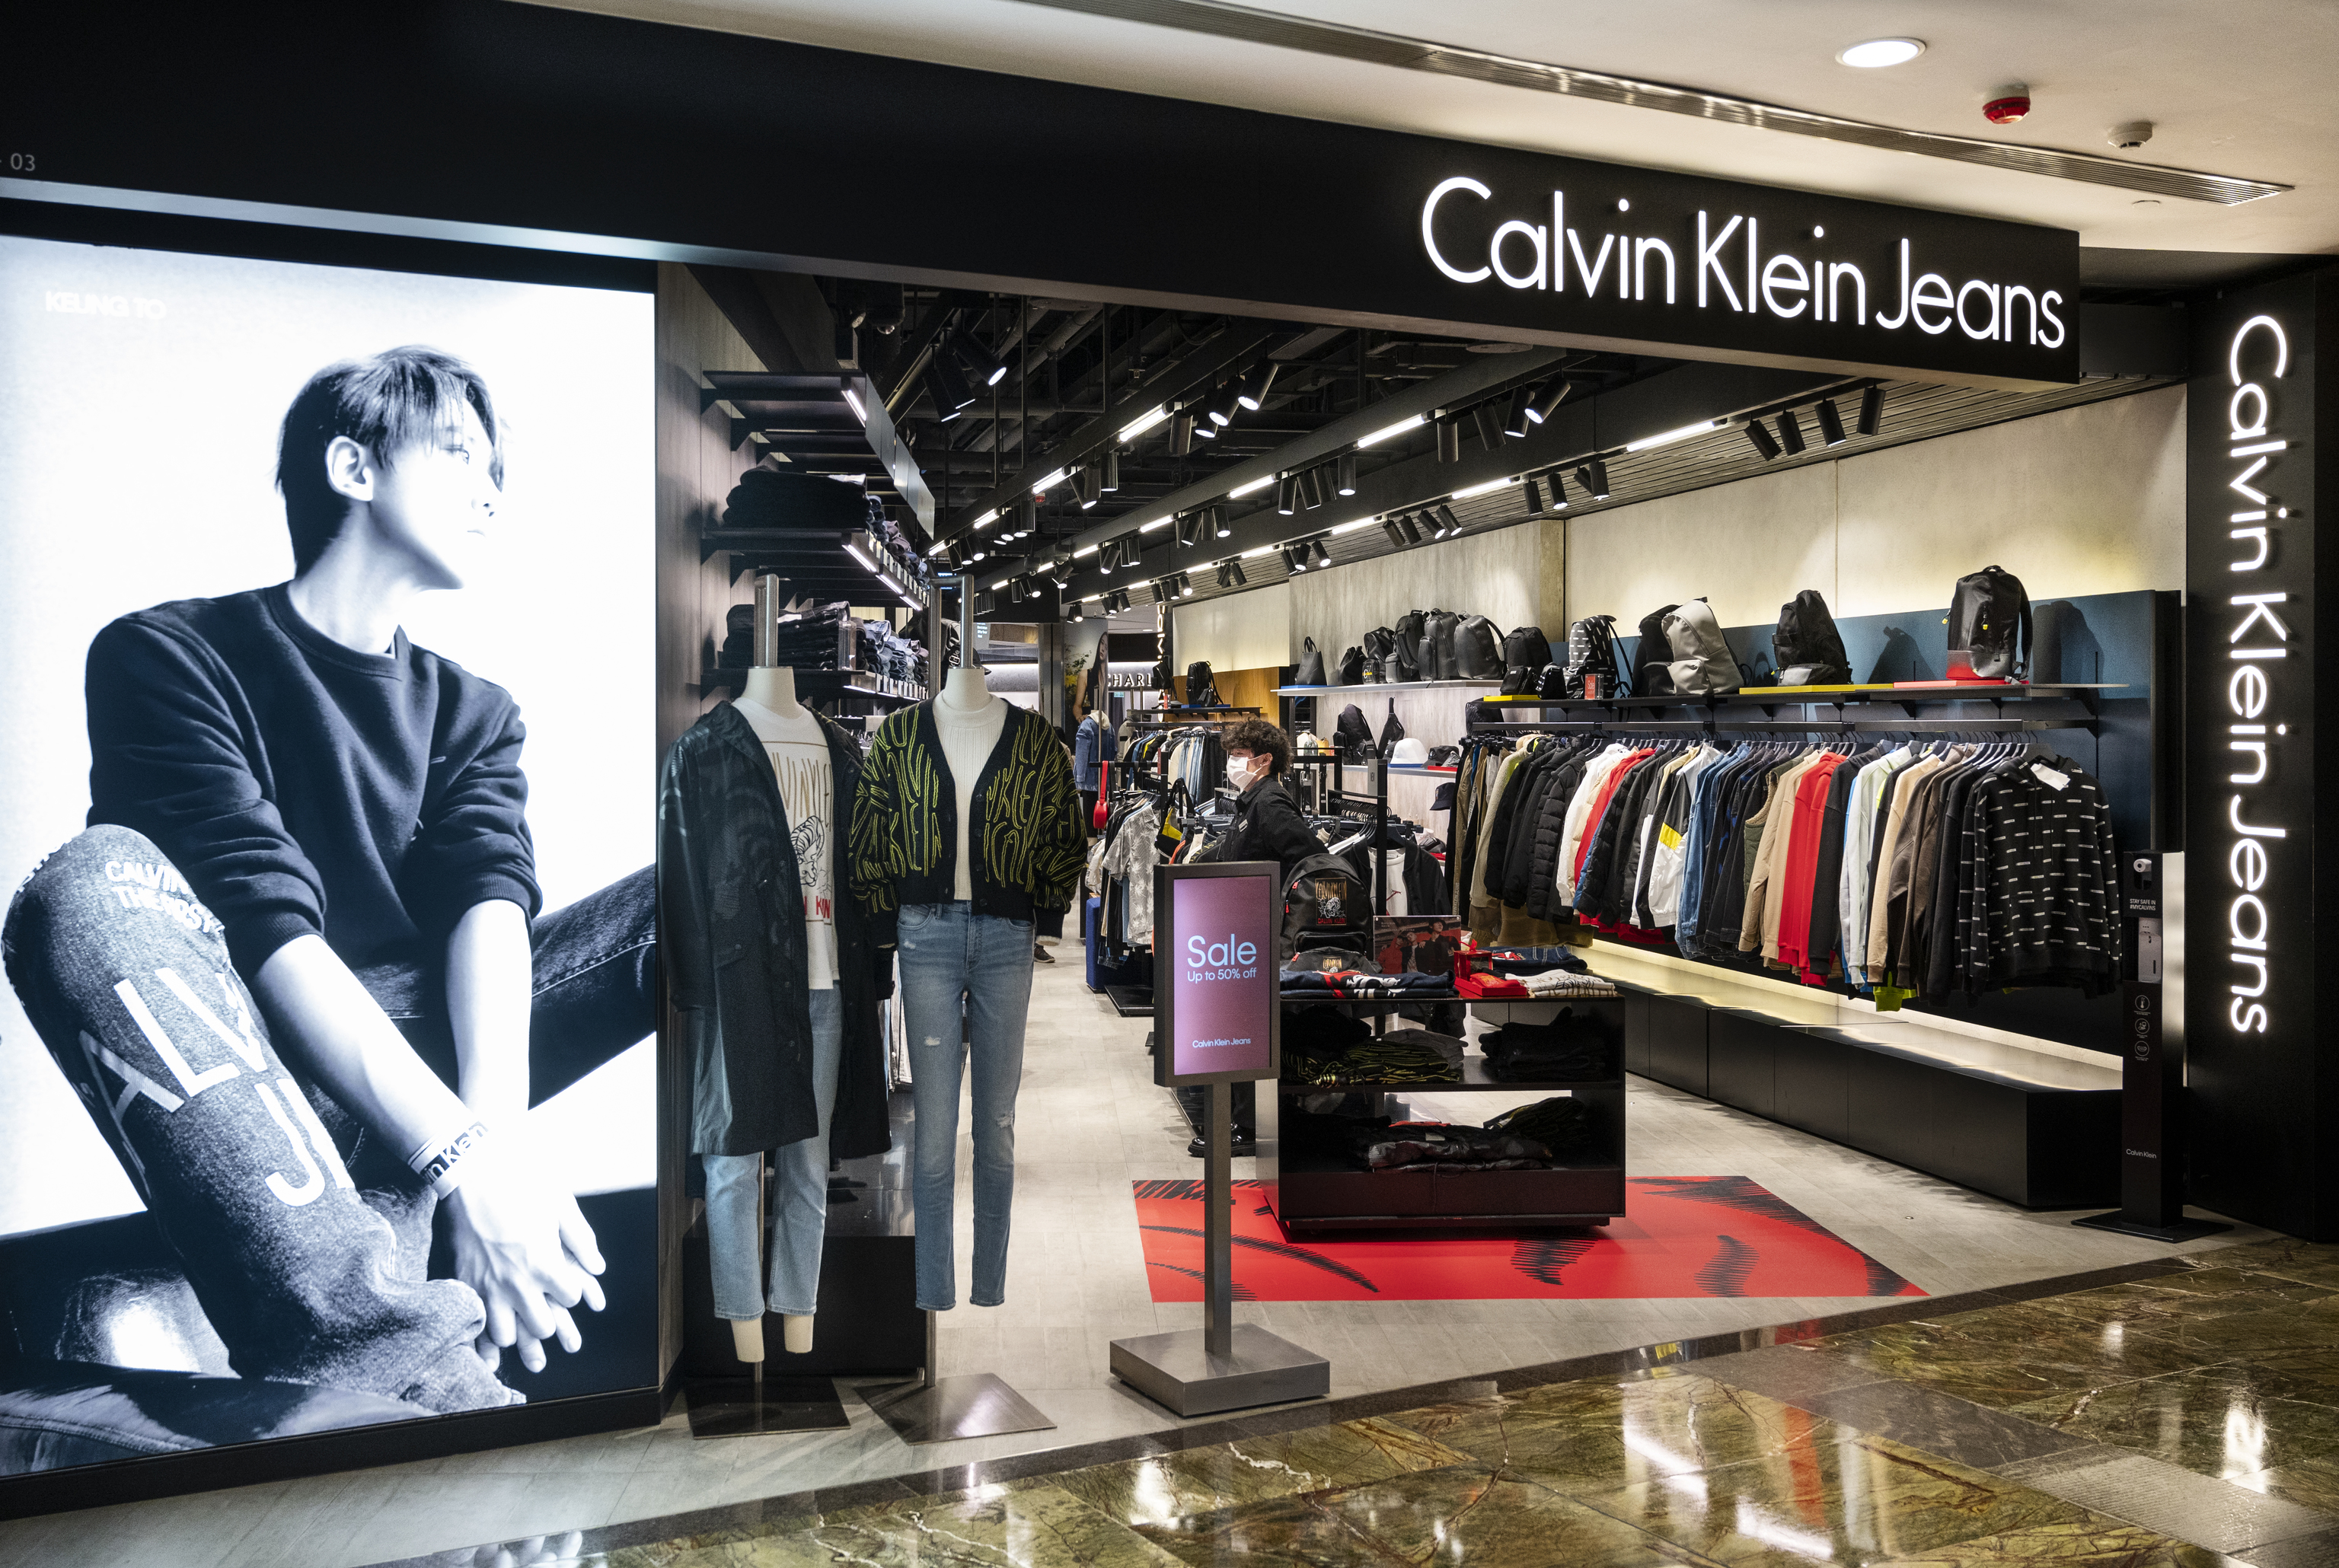 Tienda de marca multinacional de moda estadounidense Calvin Klein Jeans en Hong Kong.